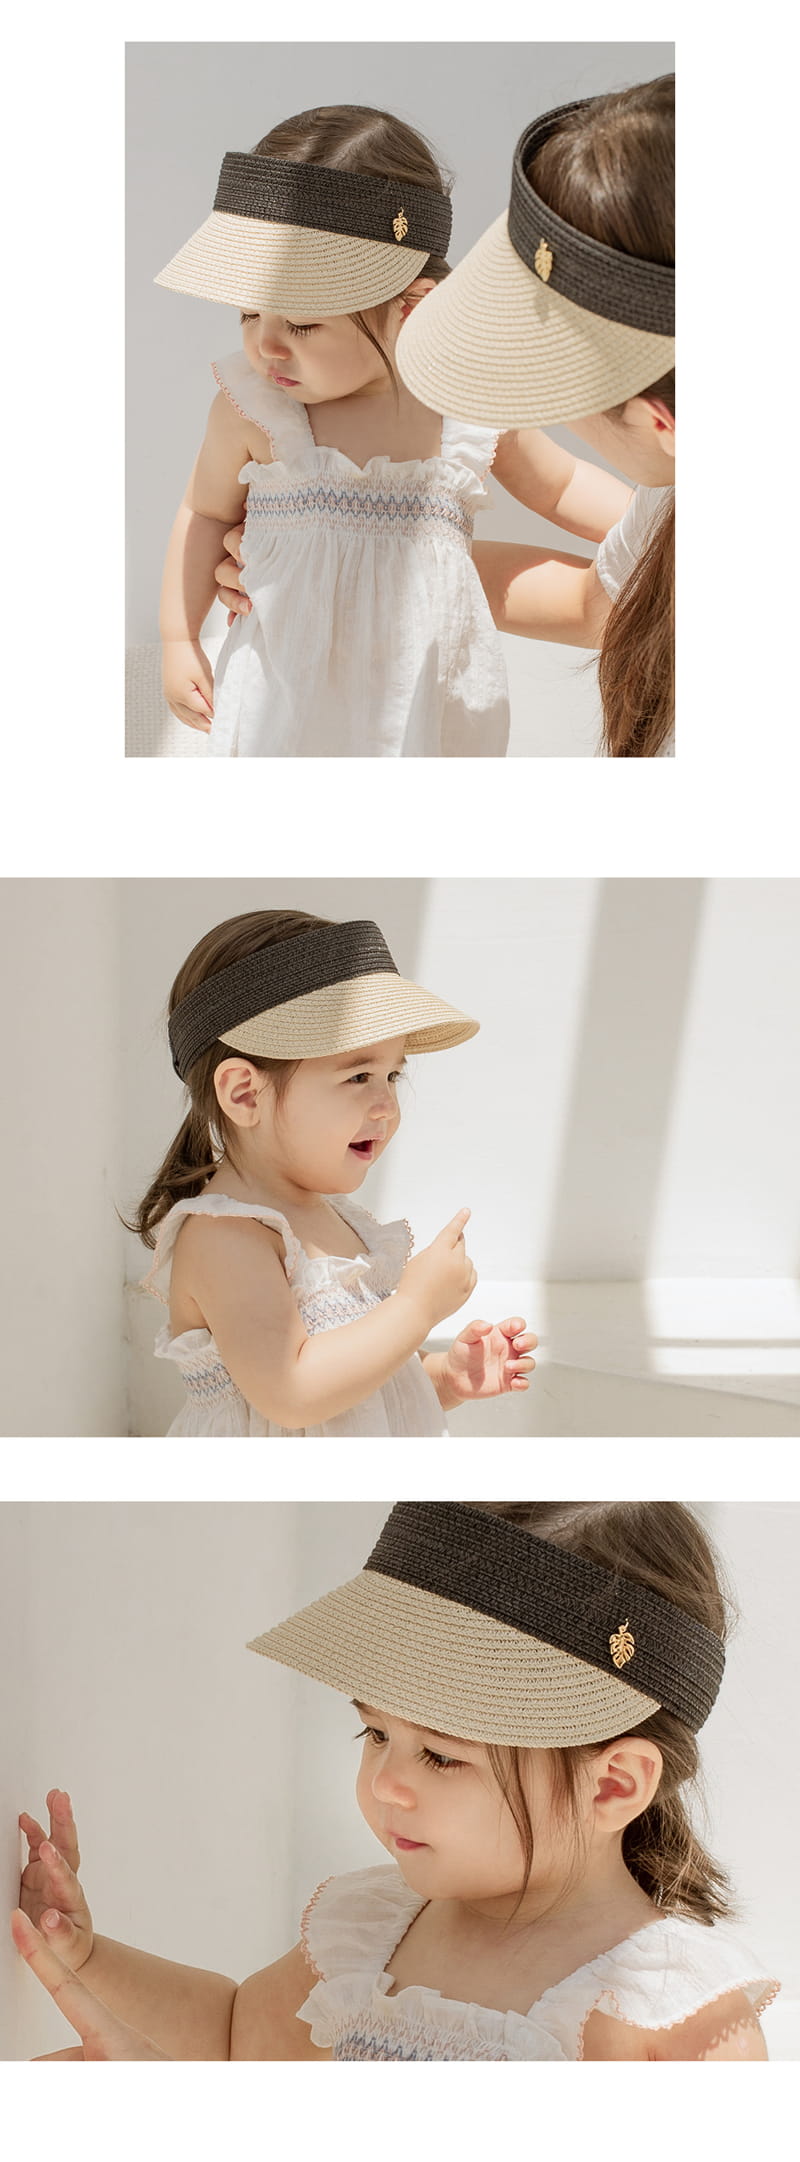 Kids Clara - Korean Baby Fashion - #babyclothing - Tote Baby Straw Sun Cap - 6